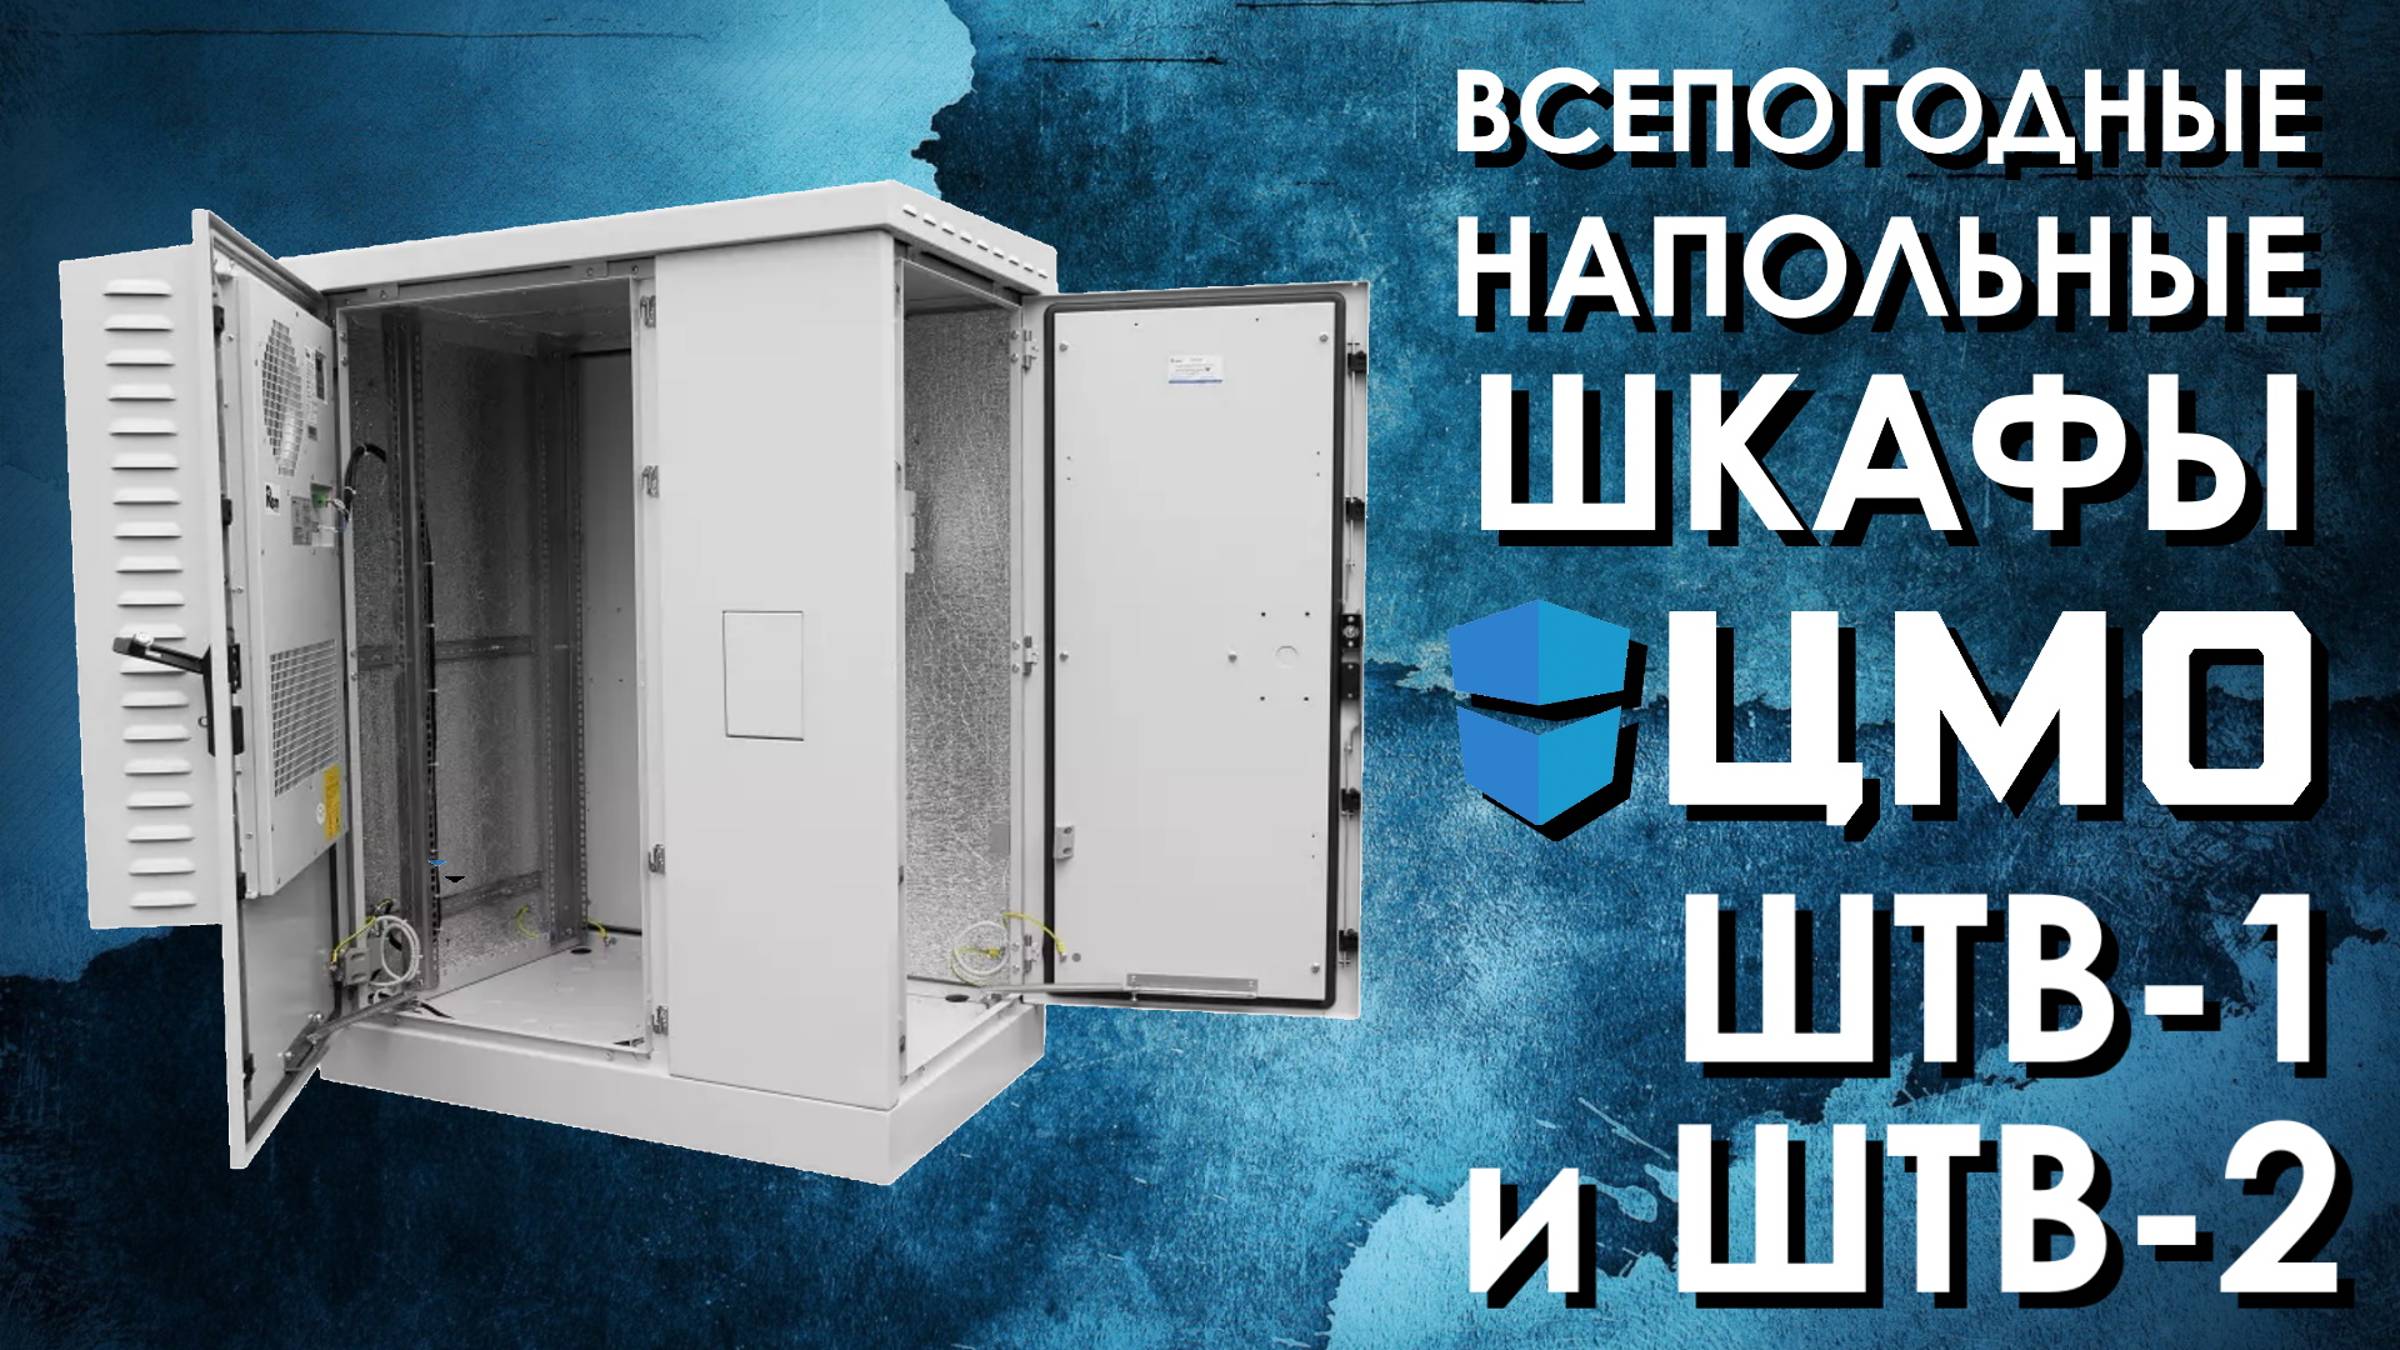 Напольные всепогодные шкафы ЦМО ШТВ-1 и ШТВ-2 : обзор от АйДистрибьют